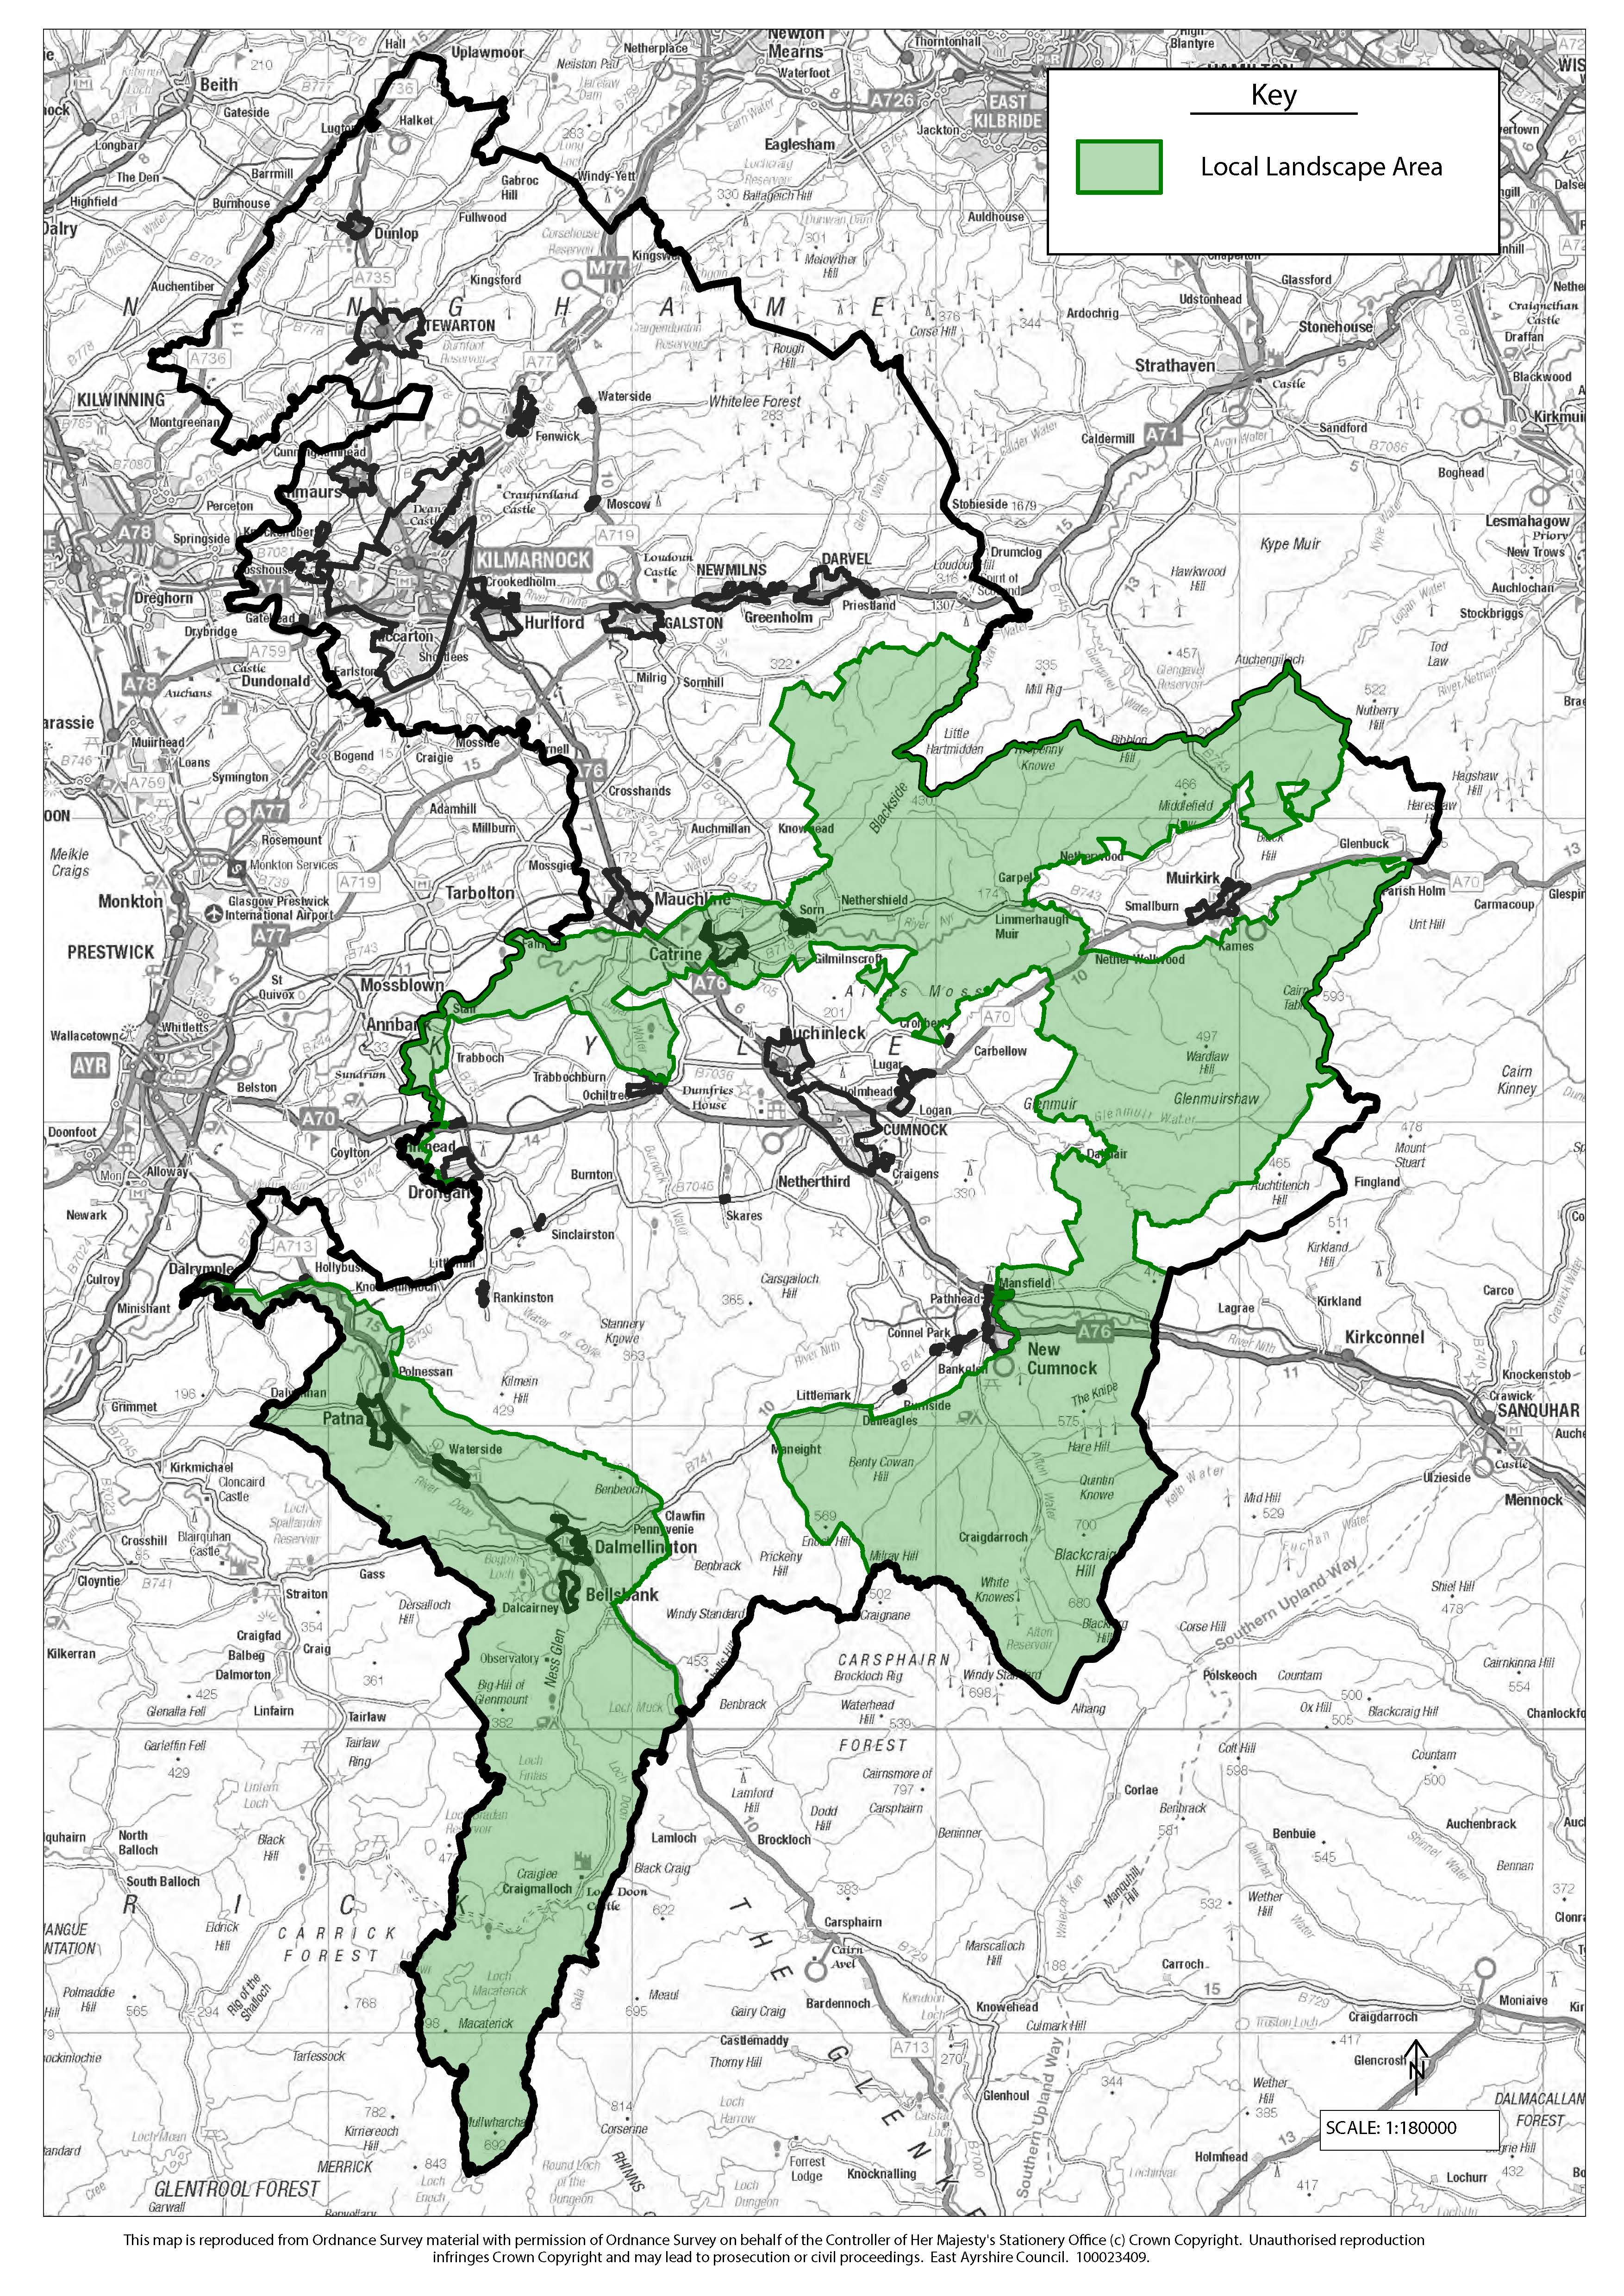 Local Landscape Plan Map